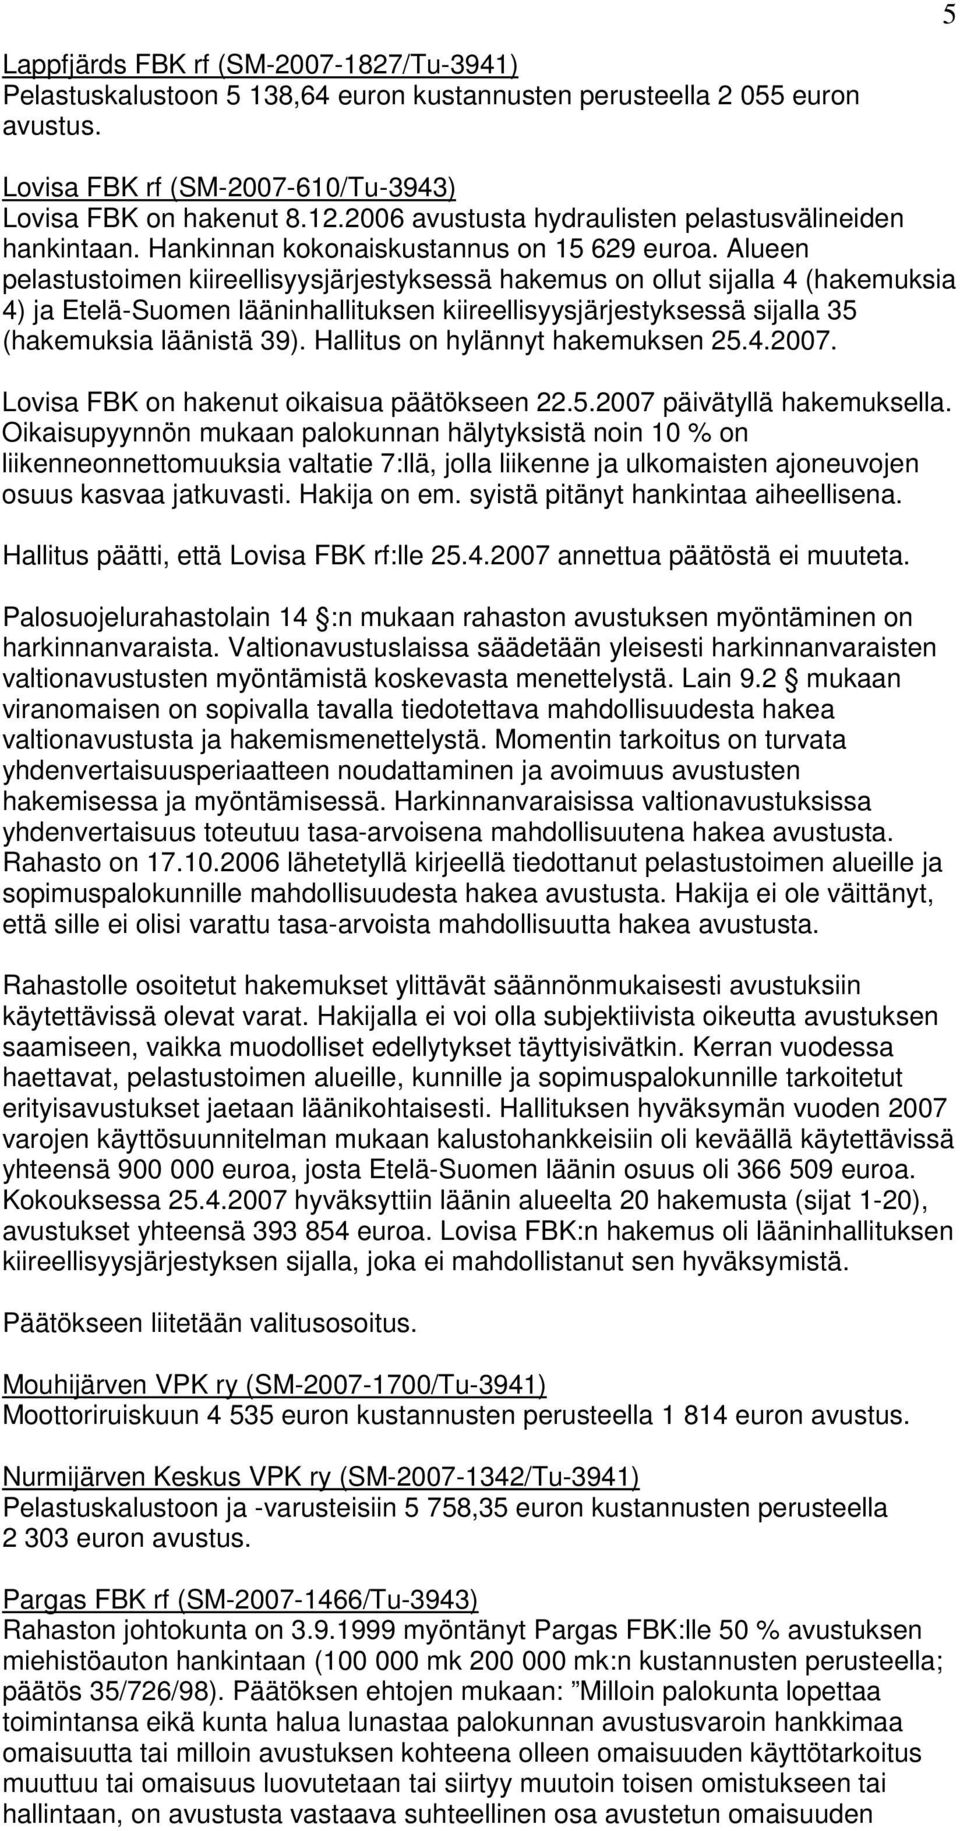 Alueen pelastustoimen kiireellisyysjärjestyksessä hakemus on ollut sijalla 4 (hakemuksia 4) ja Etelä-Suomen lääninhallituksen kiireellisyysjärjestyksessä sijalla 35 (hakemuksia läänistä 39).